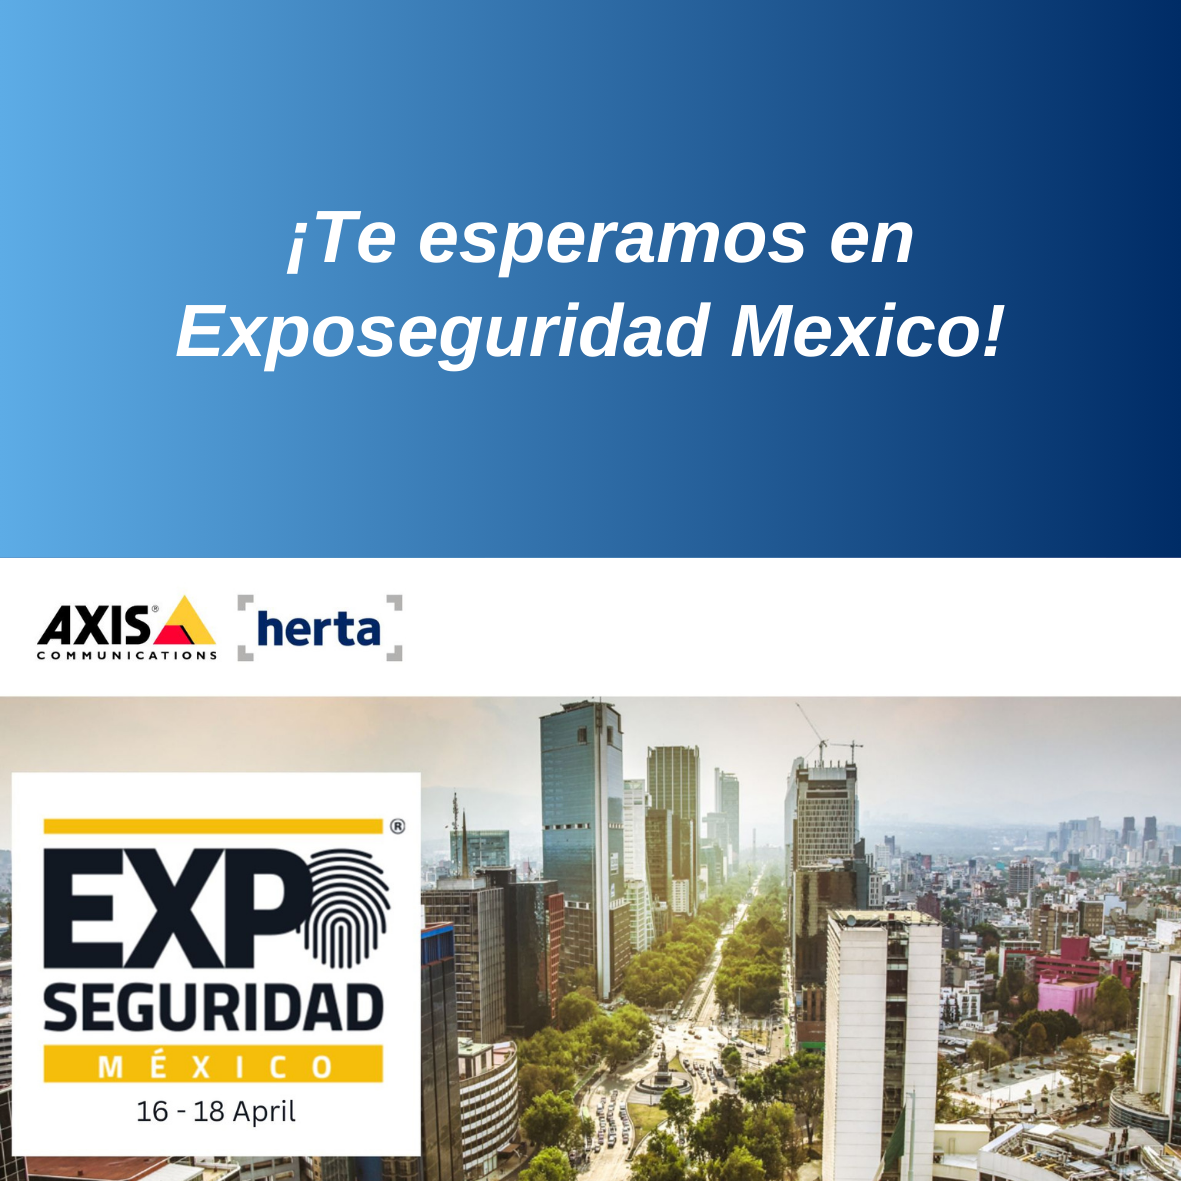 Herta se une a Axis para presentar sus soluciones innovadoras en Exposeguridad México